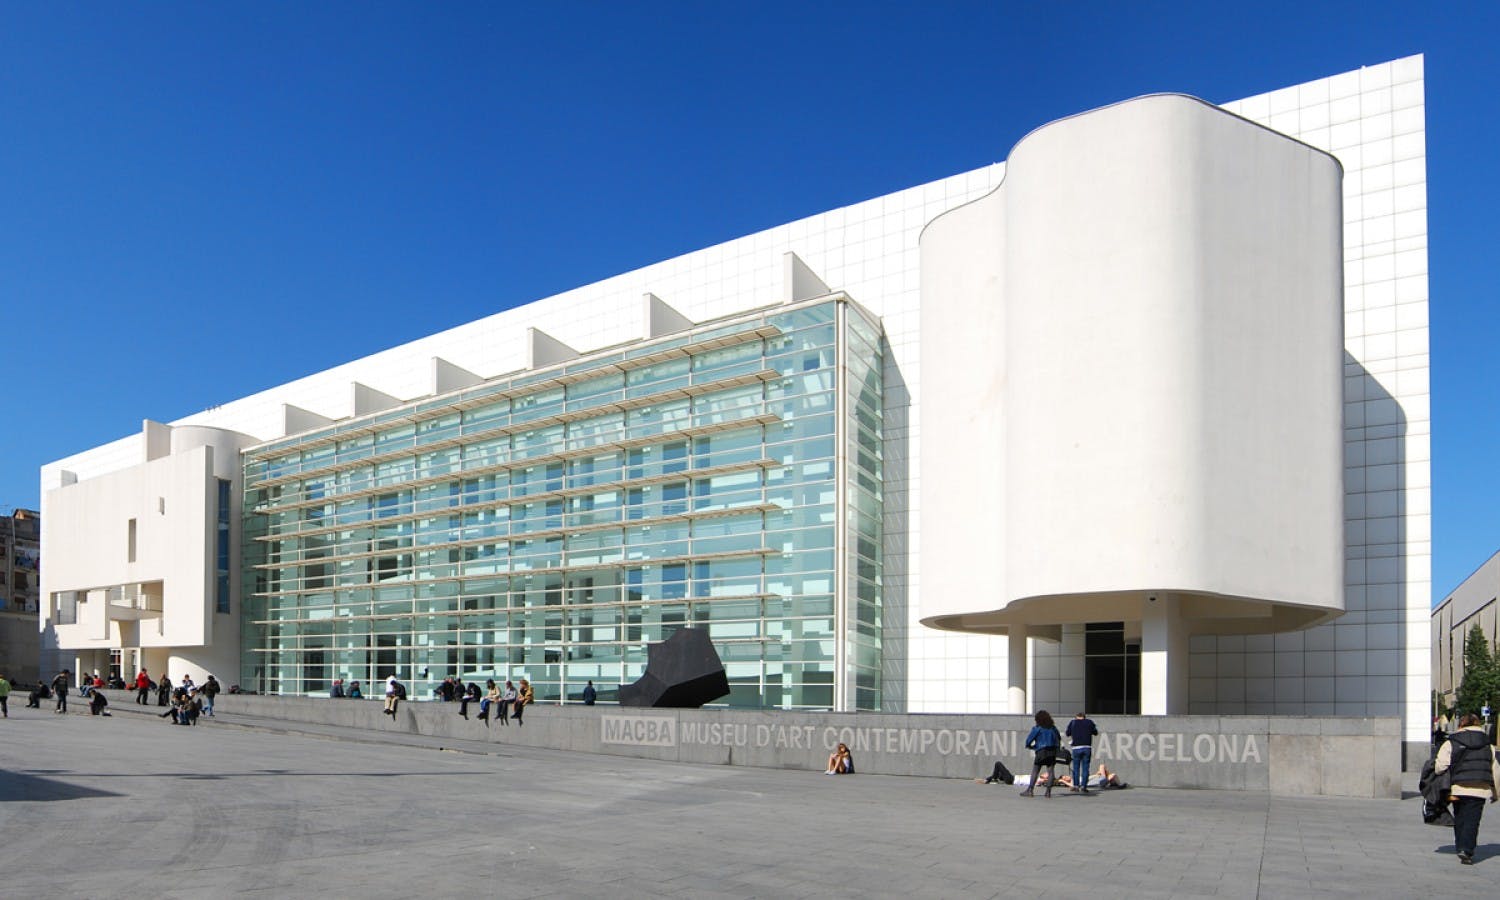 O Museu de Arte Contemporânea de Barcelona (MACBA)